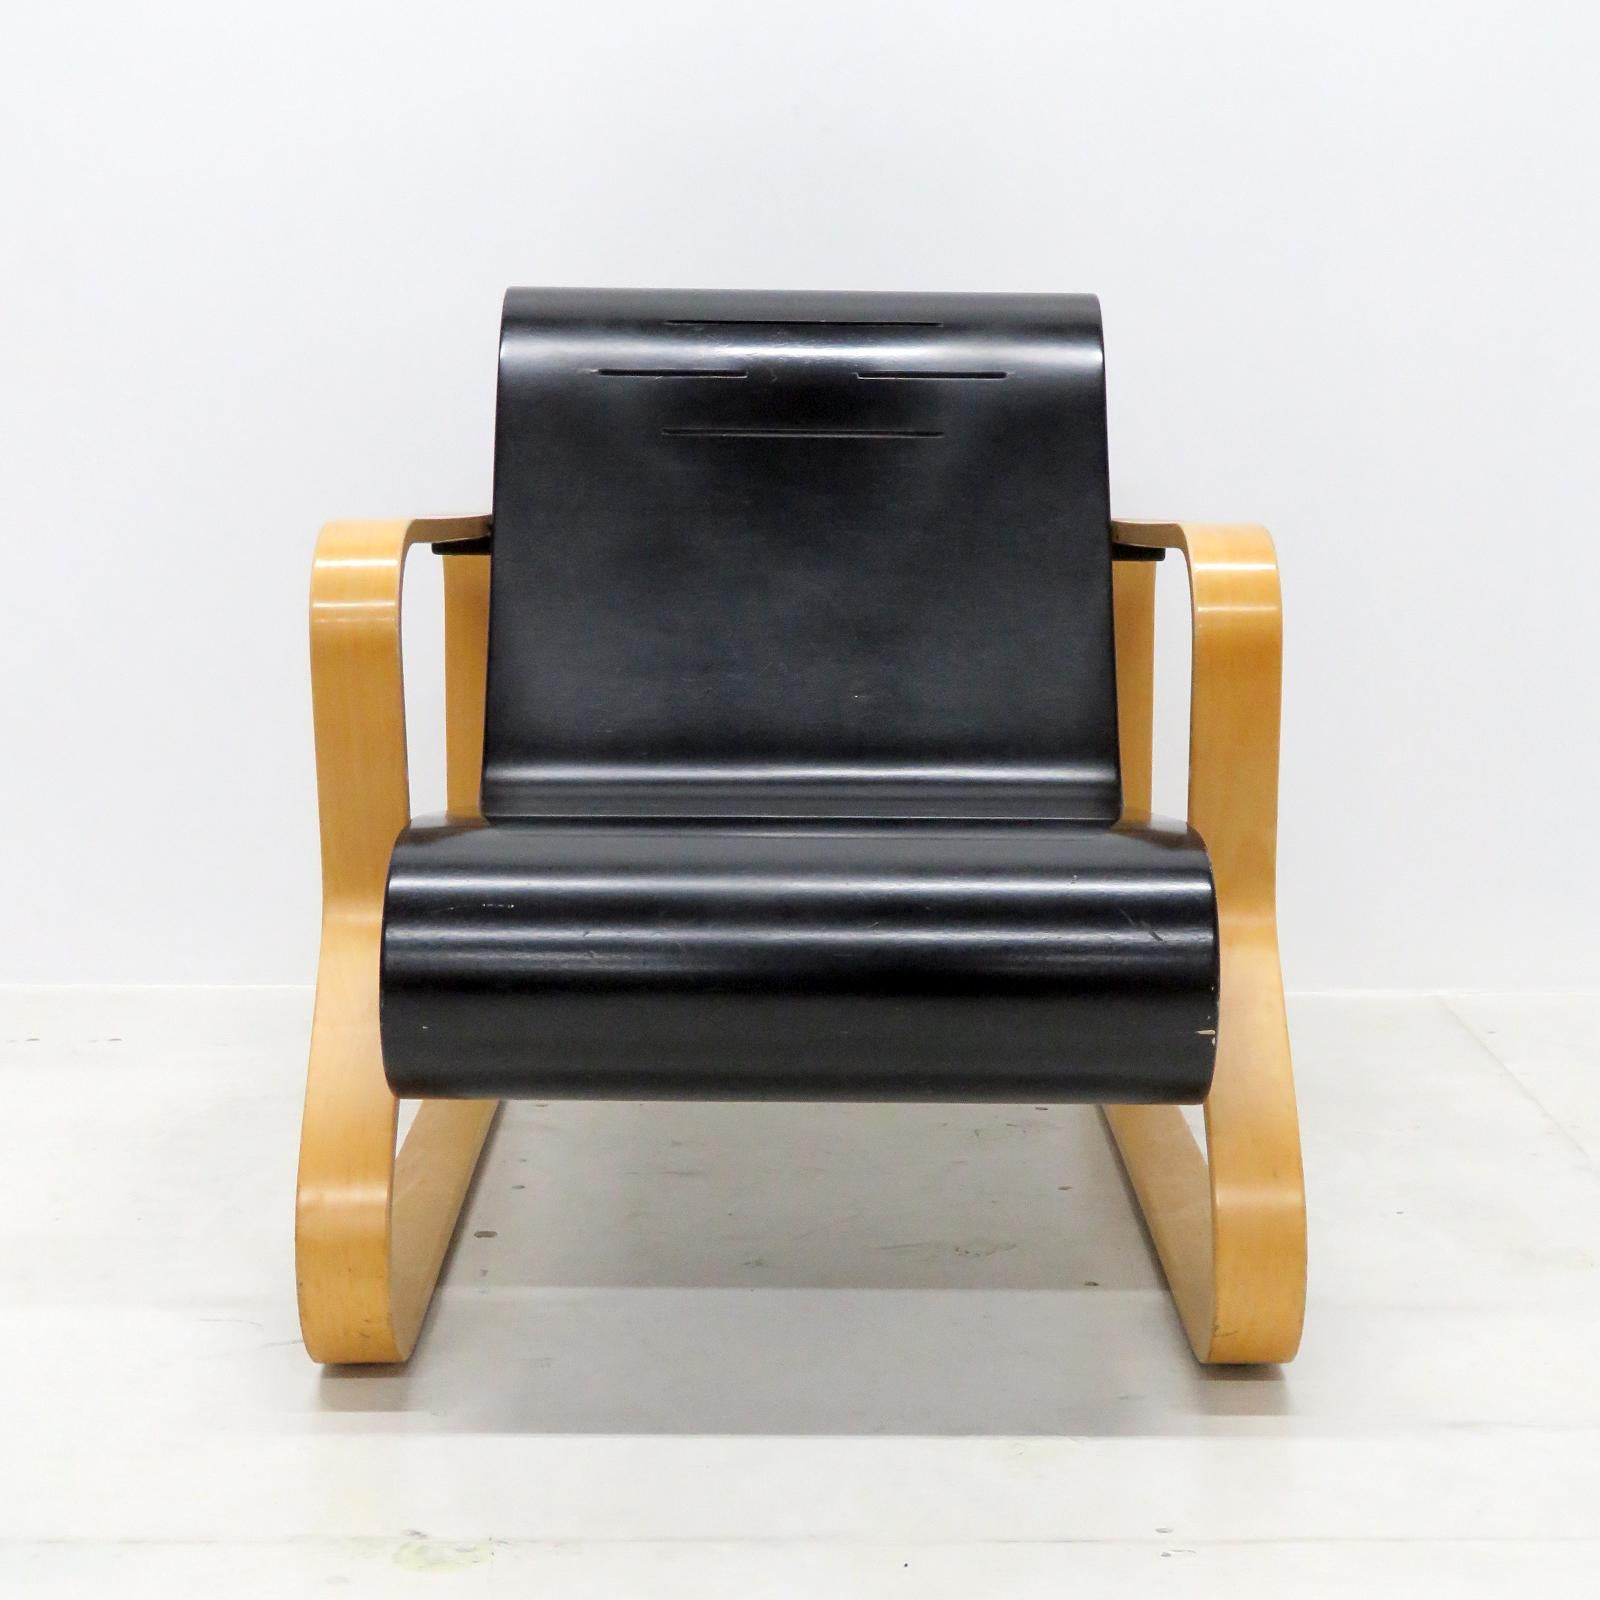 Superbe fauteuil Paimio 41 d'Alvar Alto pour Artek, Finlande, en bois de bouleau naturel avec assise en bois courbé noir avec fentes d'aération. Le cadre en bouleau stratifié est plié en une courbe fermée avec des traverses en bouleau massif. Moulée